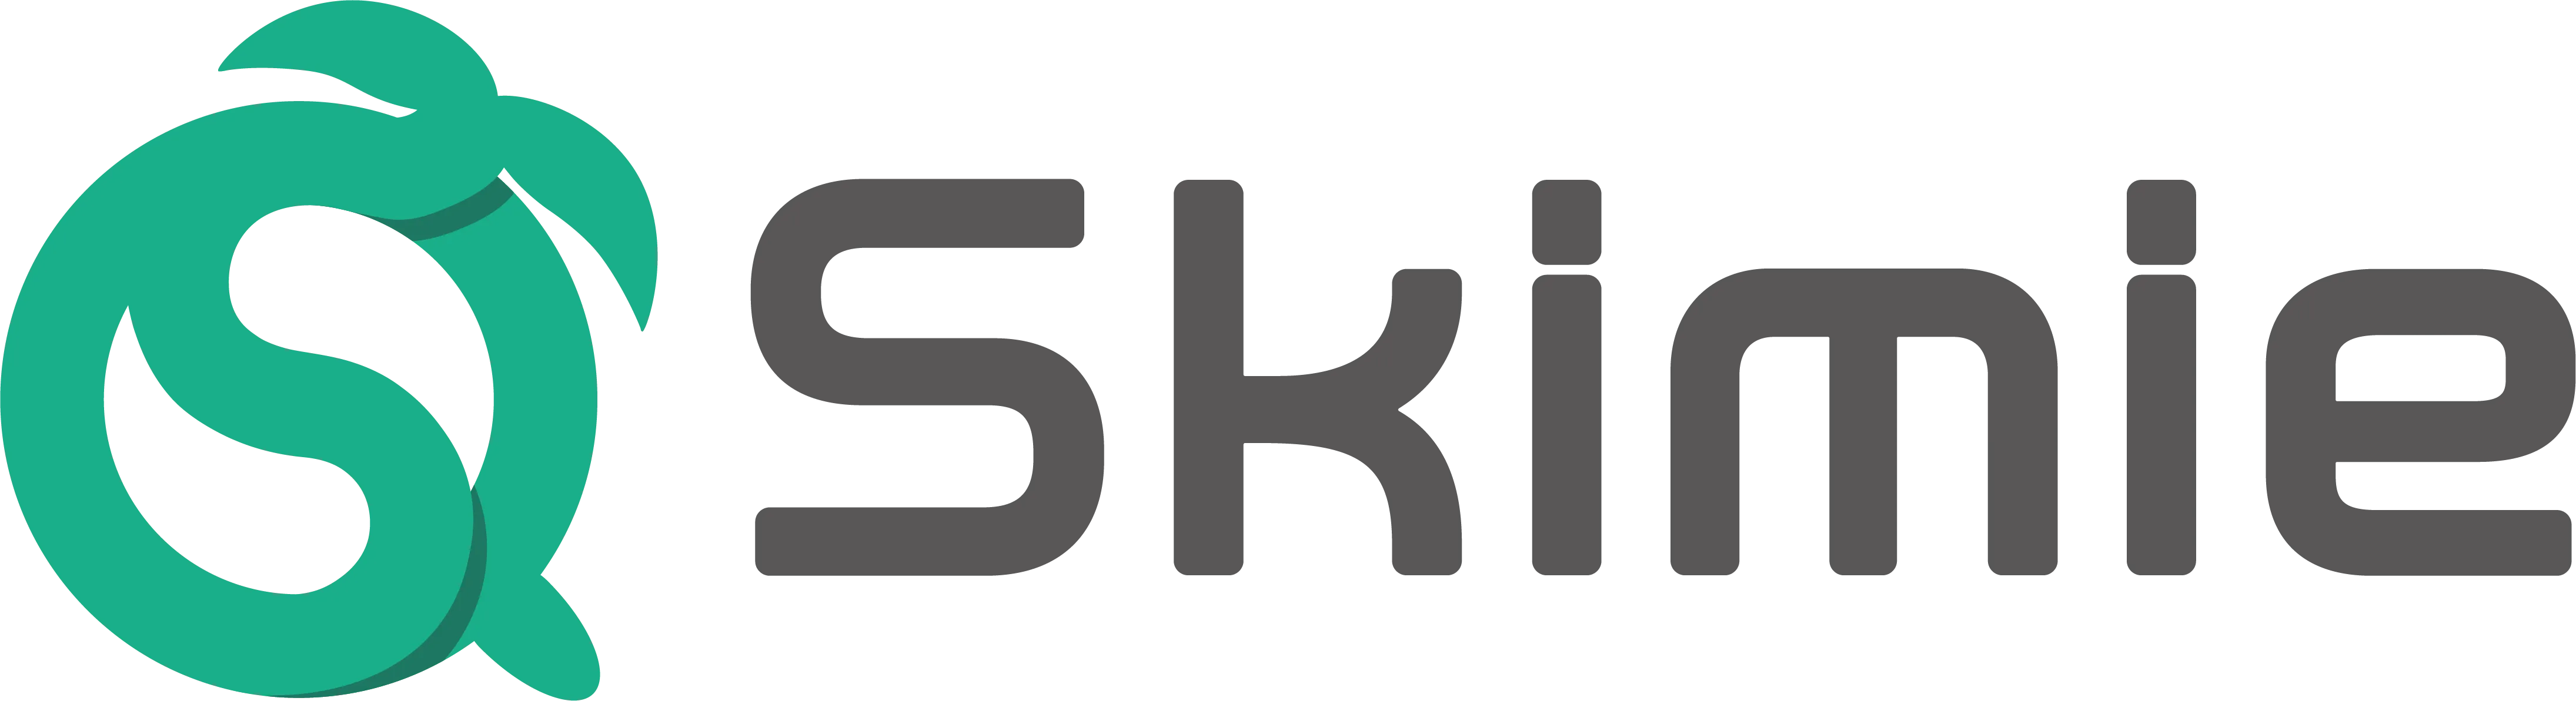 Skimie logo